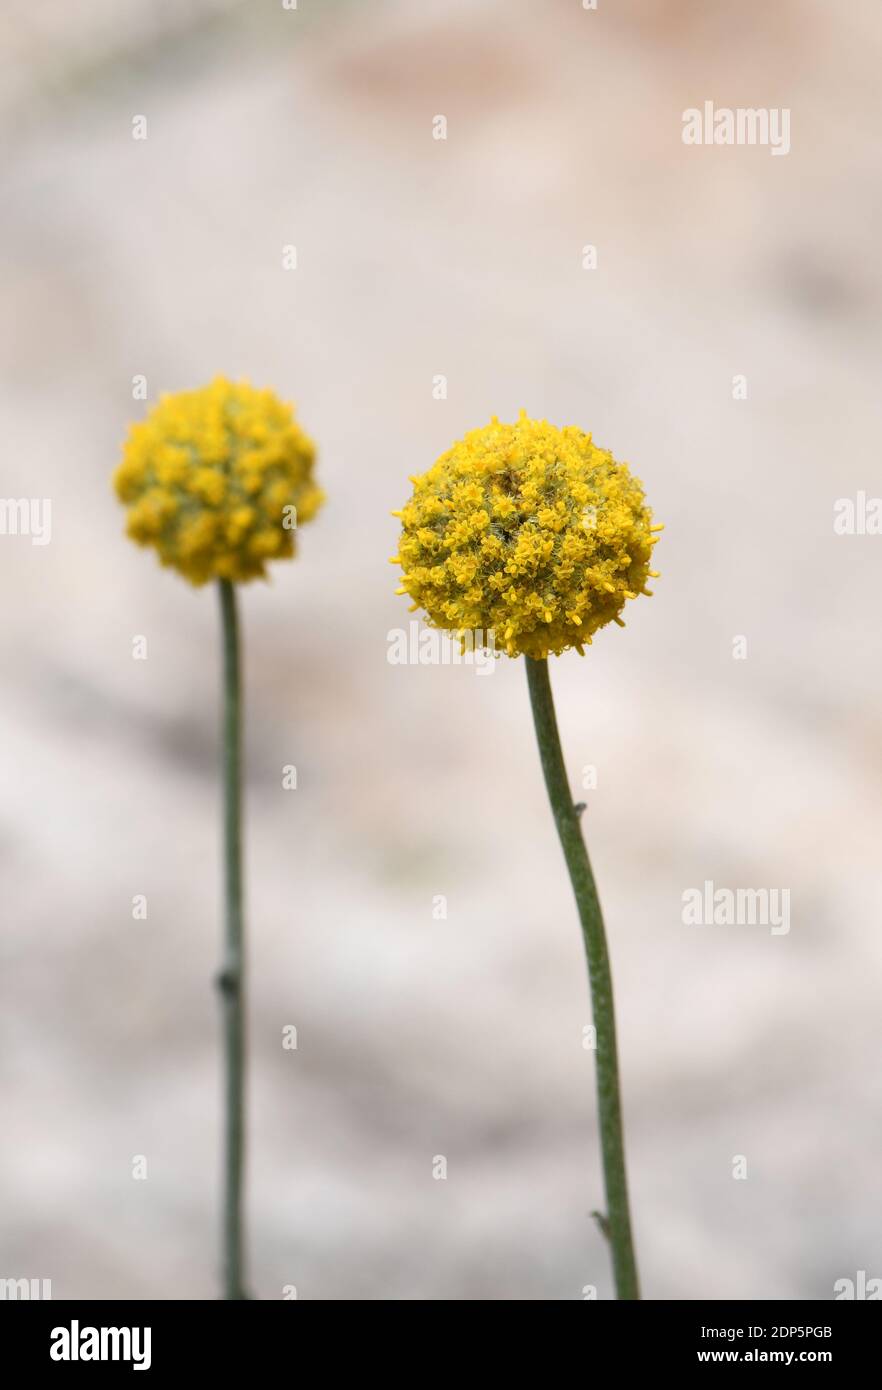 Australische einheimische gelbe Billy Button Blumen, Craspedia glauca, Familie Asteraceae Gänseblümchen. Auch bekannt als Wollköpfe oder Drumstick Blumen. Mehrjährig Stockfoto